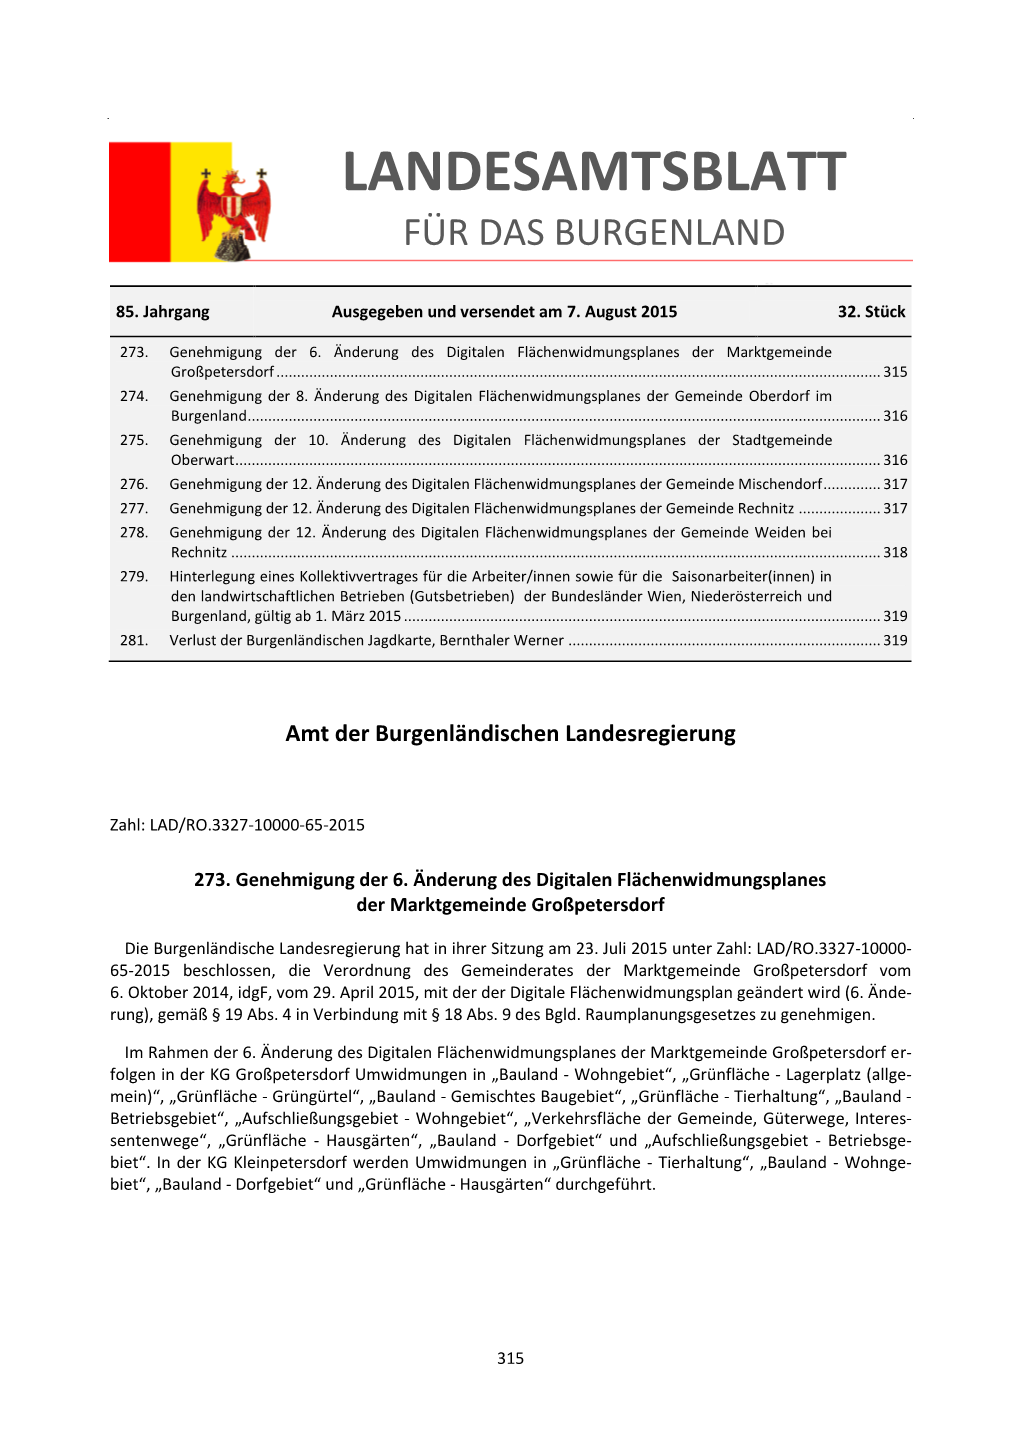 Landesamtsblatt Für Das Burgenland 32